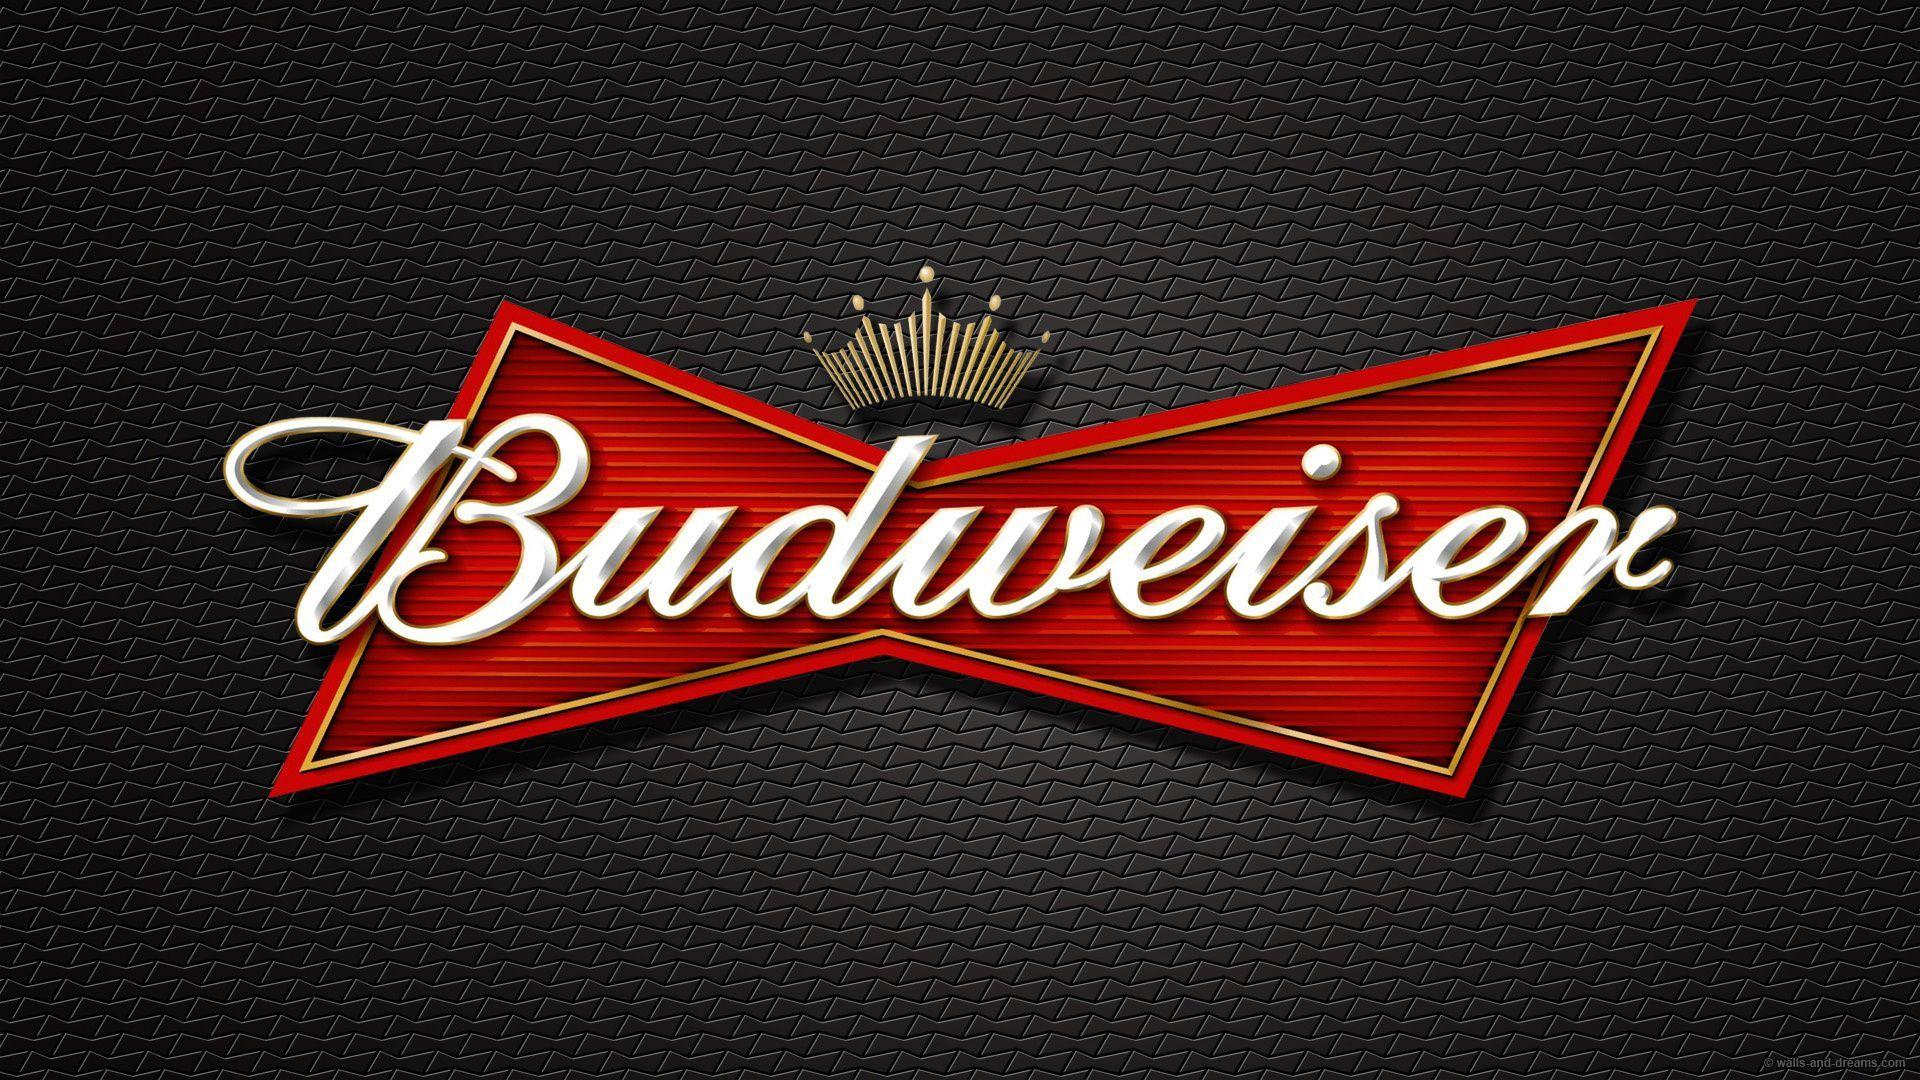 Budwieser Logo - Budweiser Logo Wallpapers - Wallpaper Cave